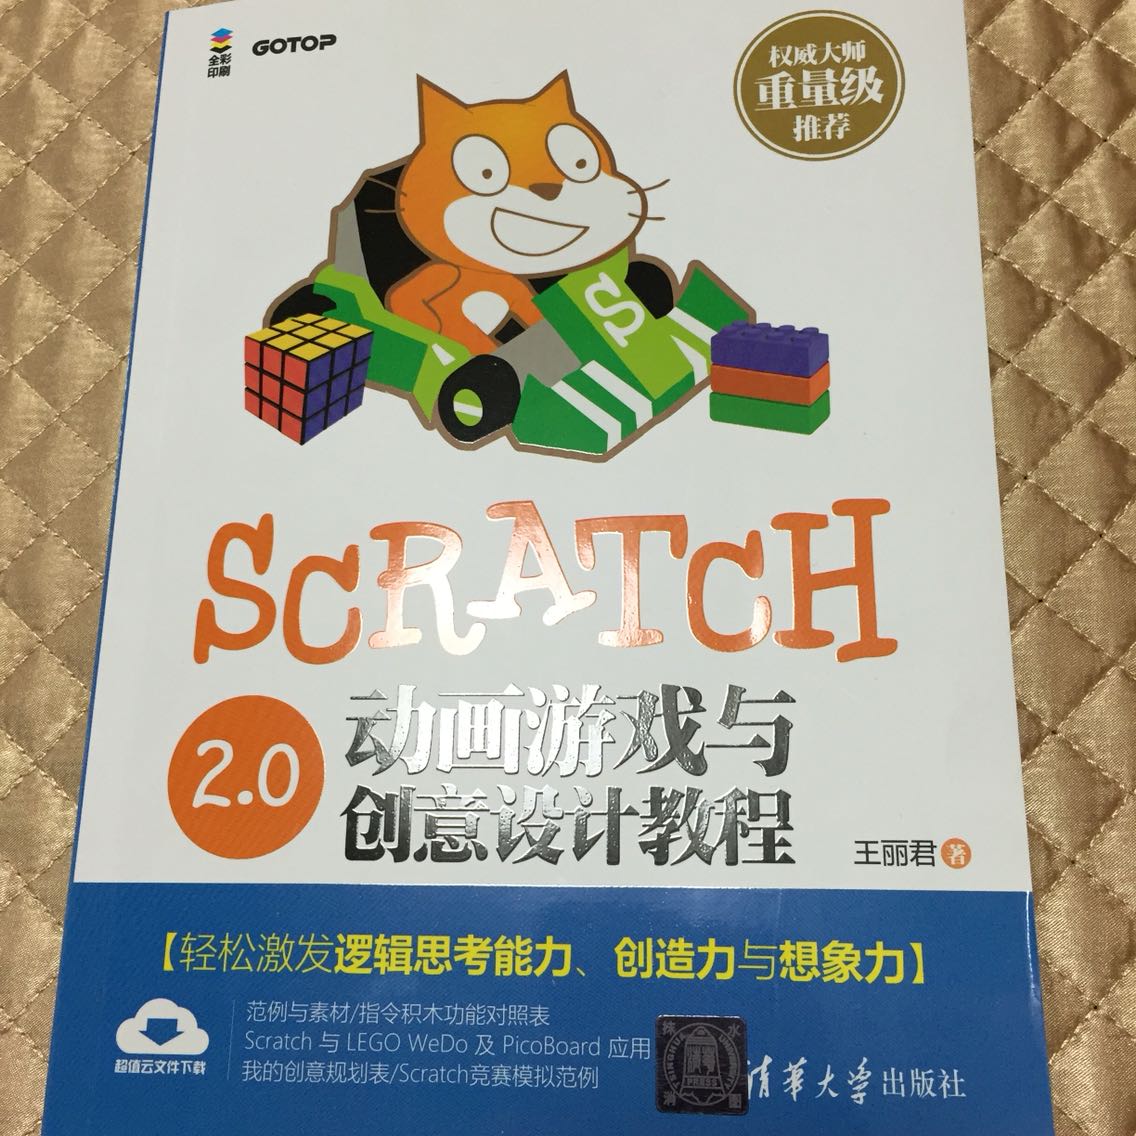 孩子特别喜欢Scratch，让他自己研究